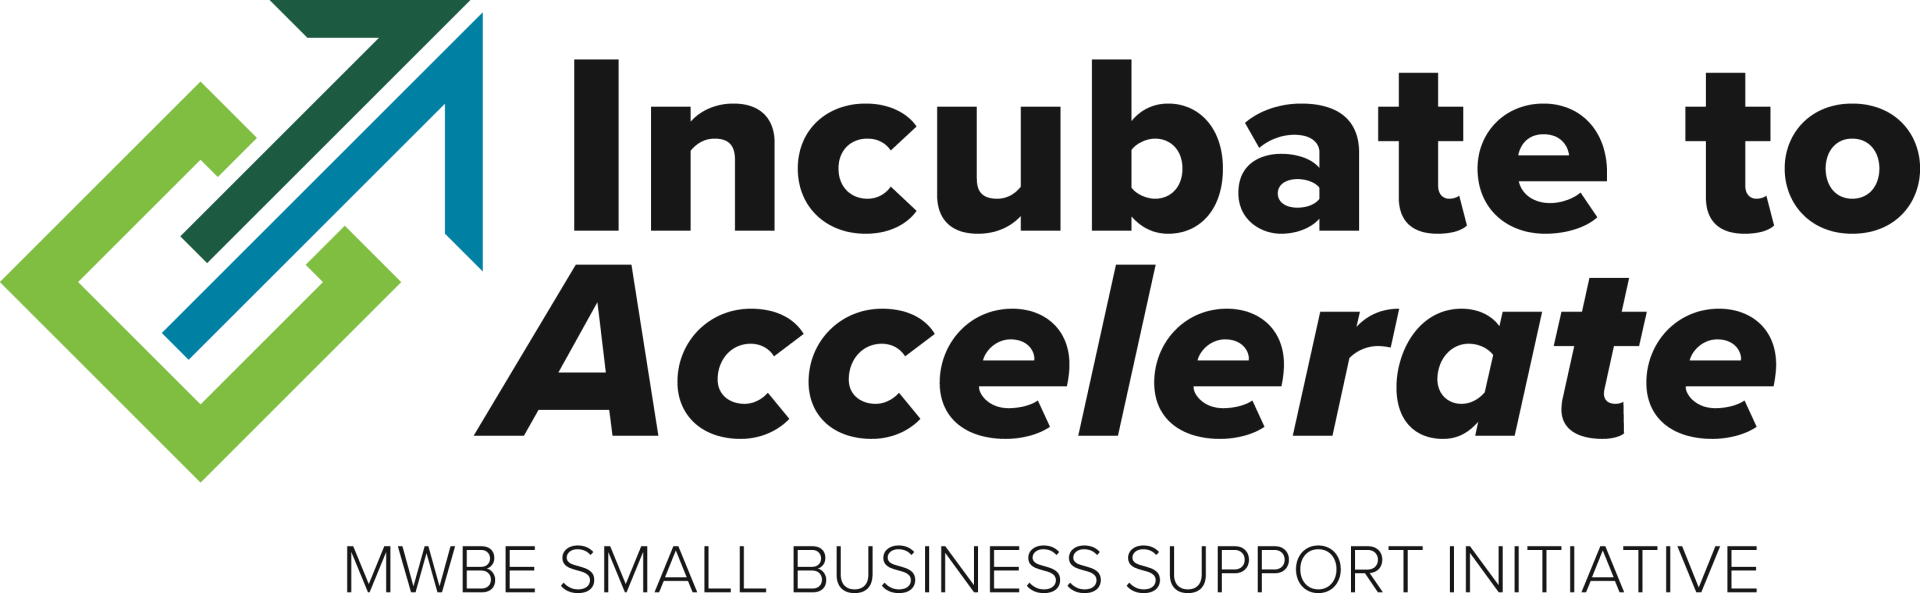 Incubate to Accelerate Logo